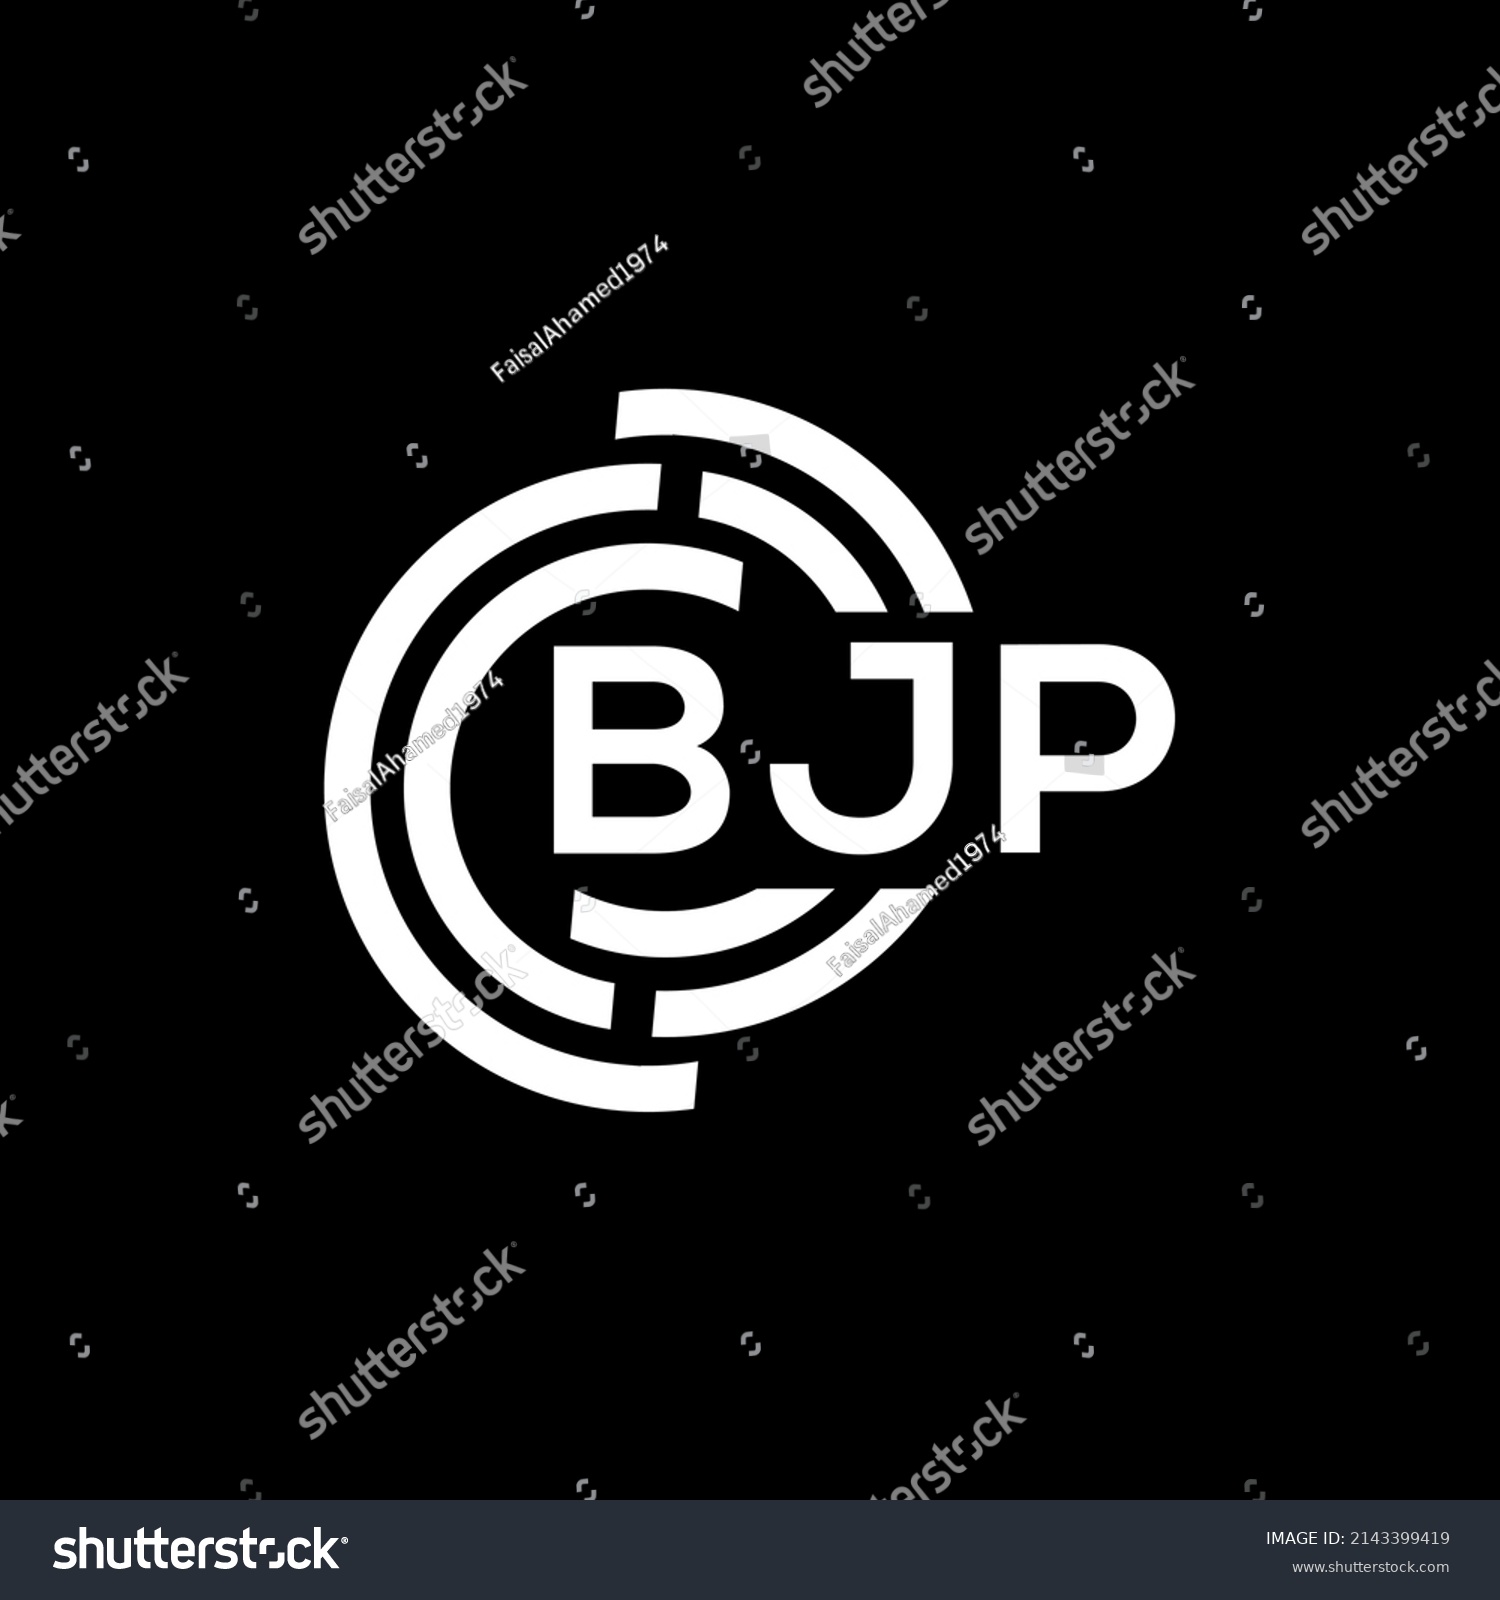 SVG of BJP letter logo design on black background. BJP creative initials letter logo concept. BJP letter design.
 svg